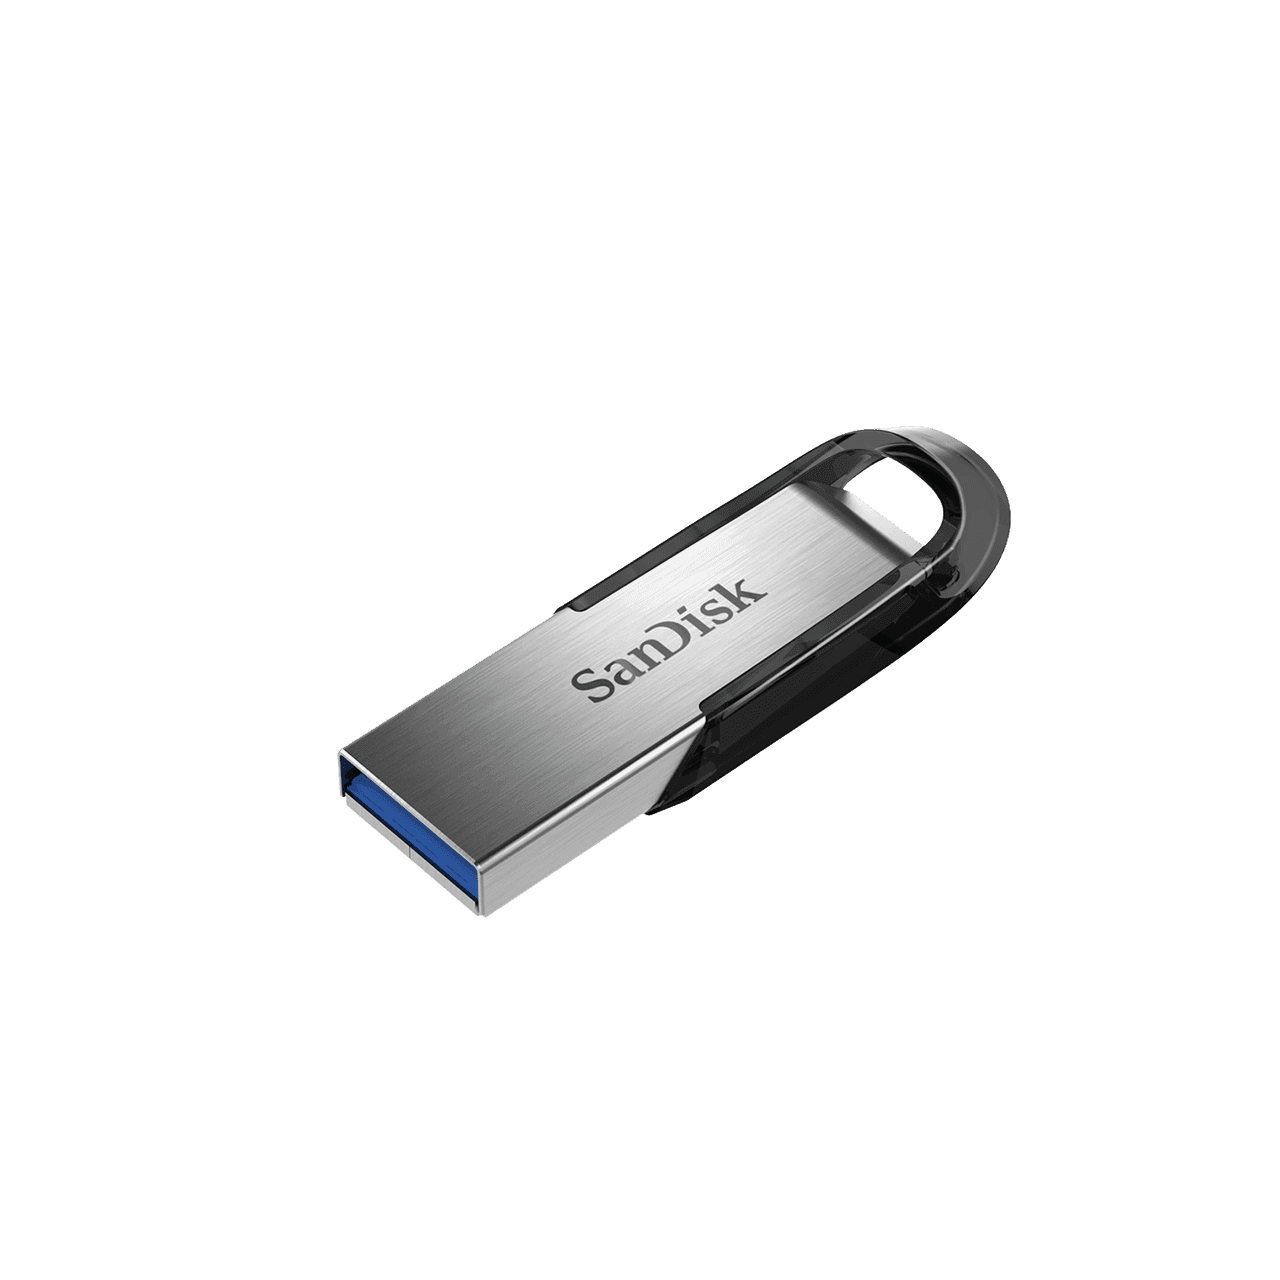 ULTRA FLAIR USB3.0 FLASH DRIVE 32GB